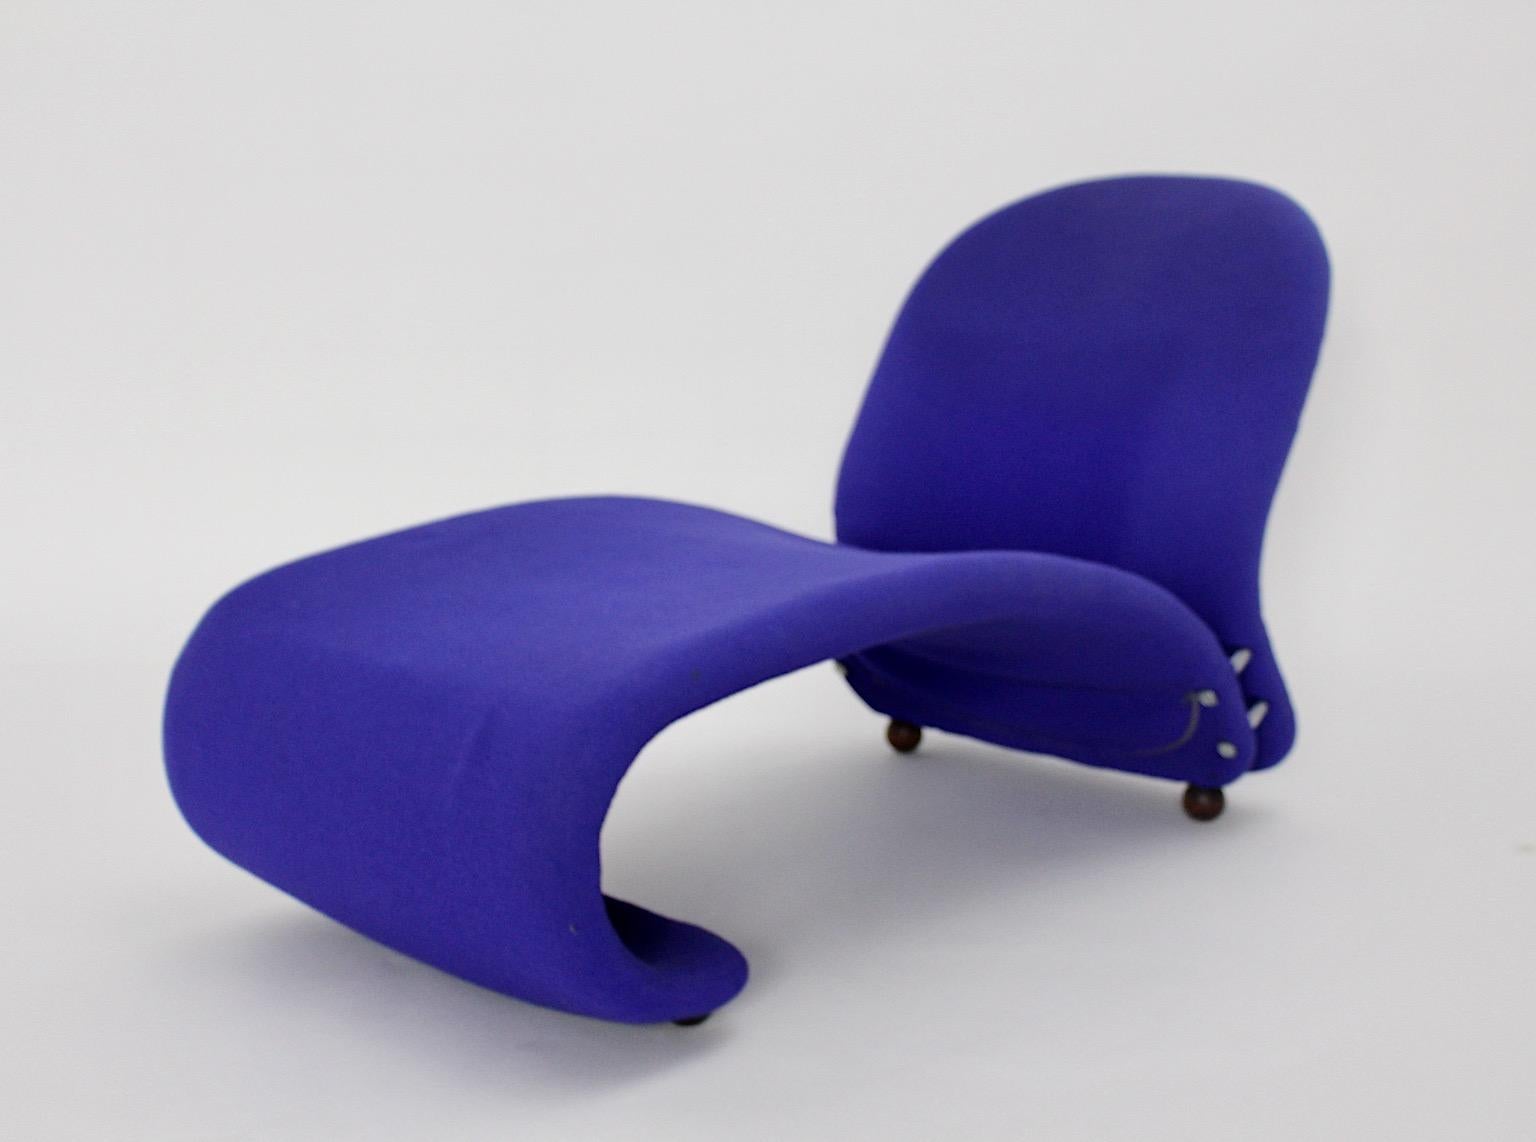 20ième siècle Chaise longue bleue organique Anthropomorphe de l'ère spatiale - Verner Panton - 1962/63 en vente